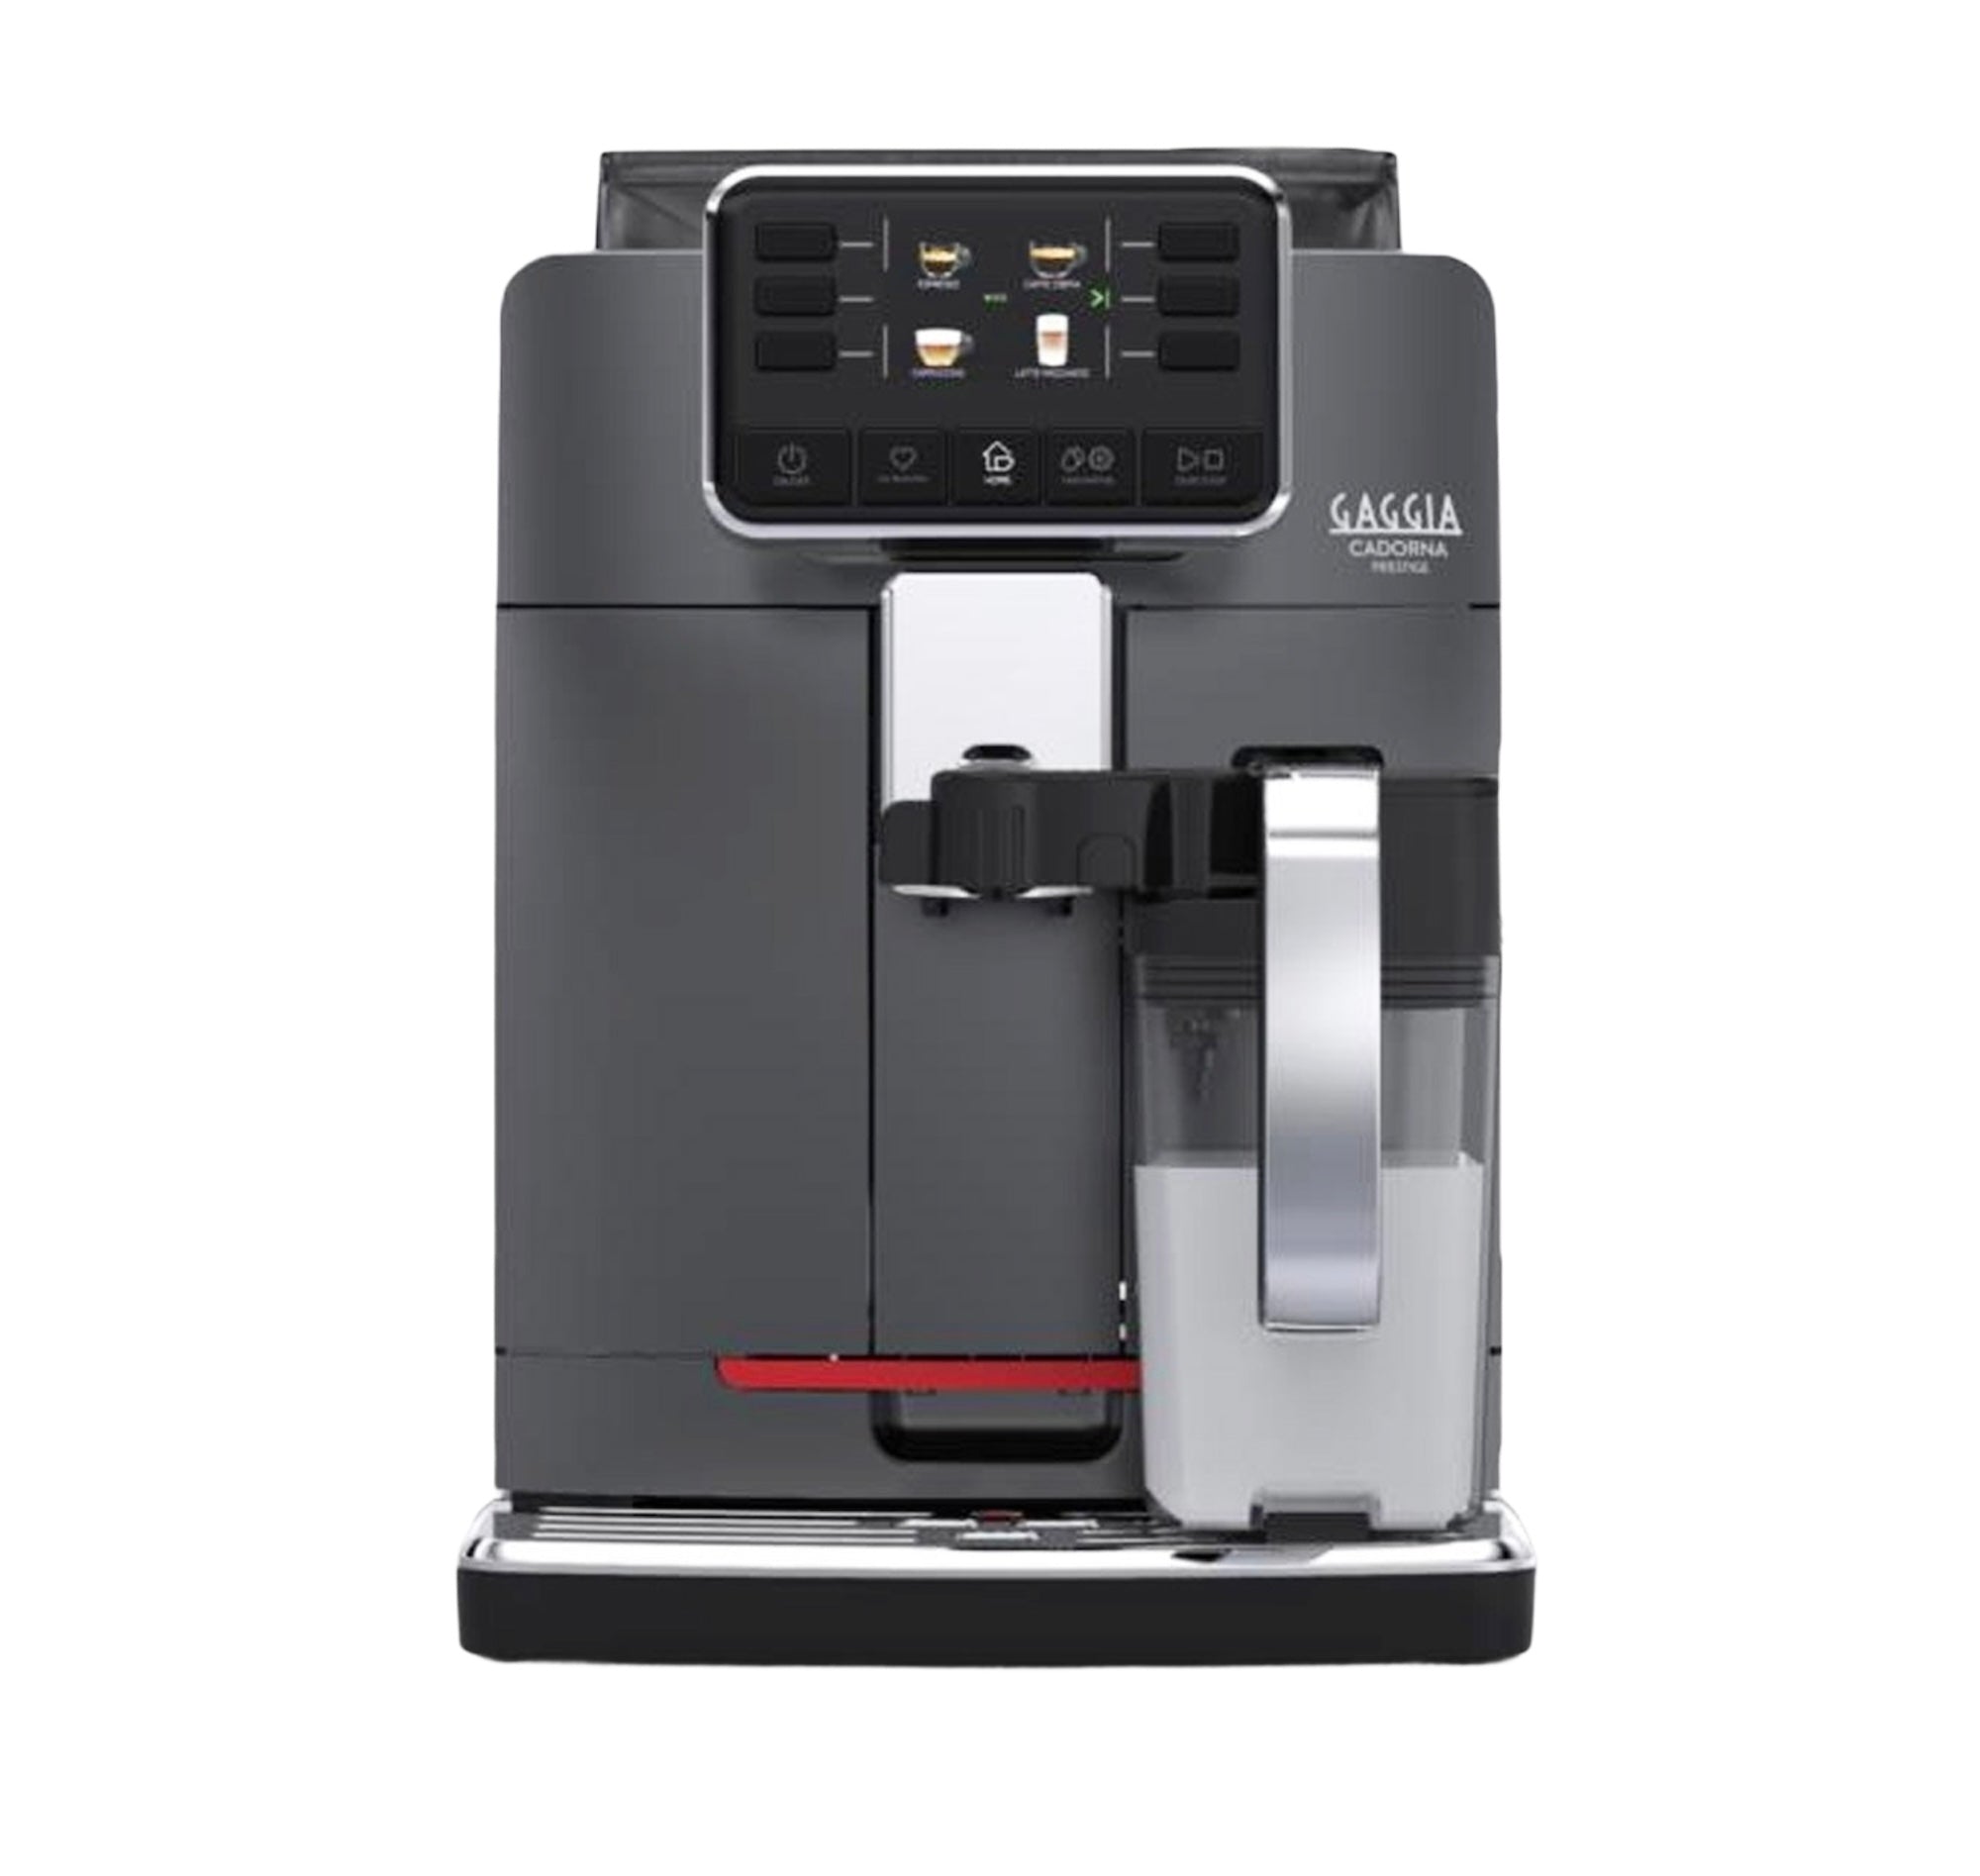 Gaggia Cadorna Prestige Espresso Machine One-touch Italian Espresso machine with 12 beverage options with 4 users profiles